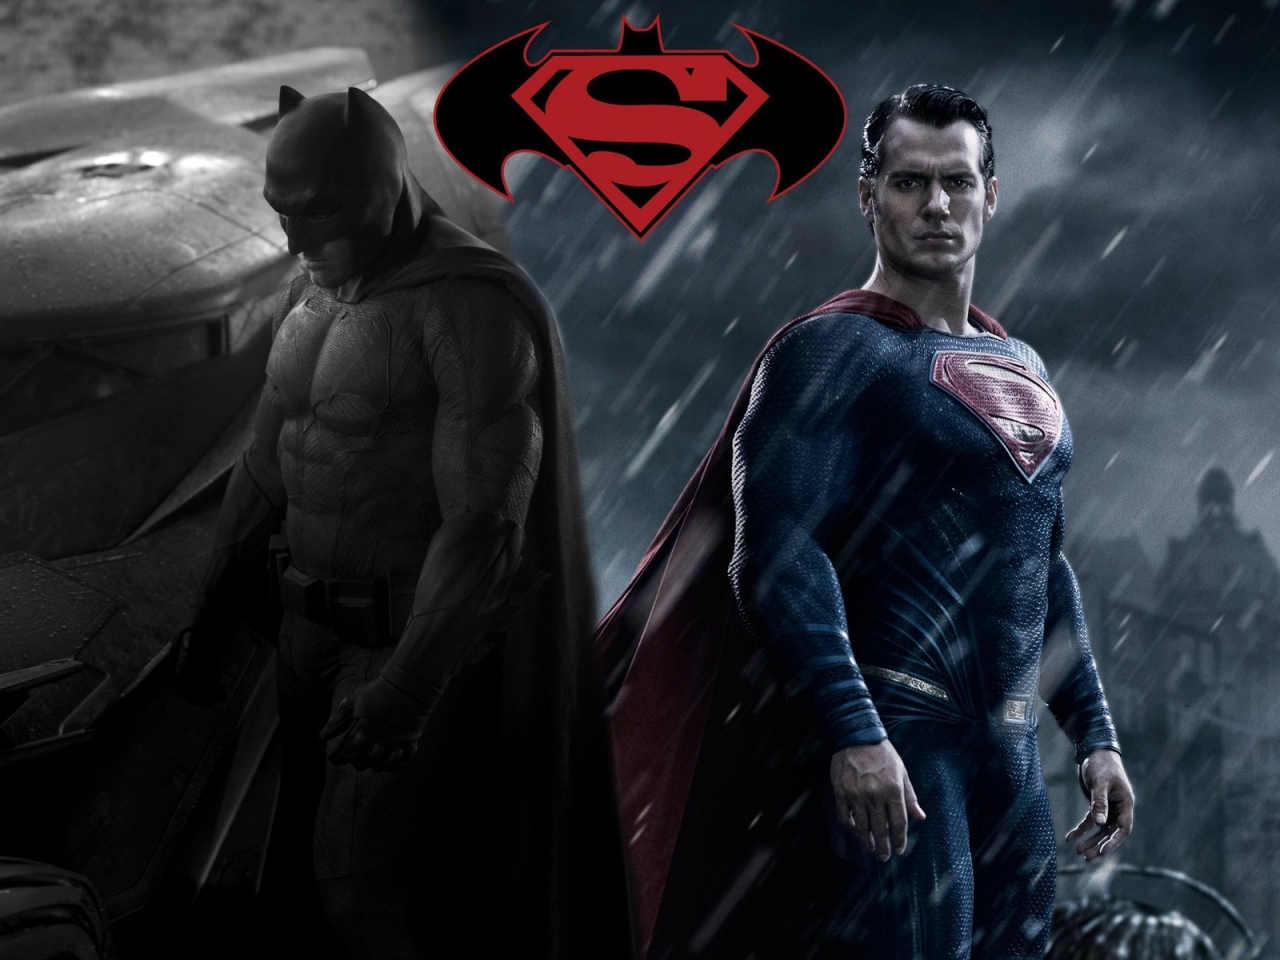 Batman vs Superman Fan Art for 1280 x 960 resolution